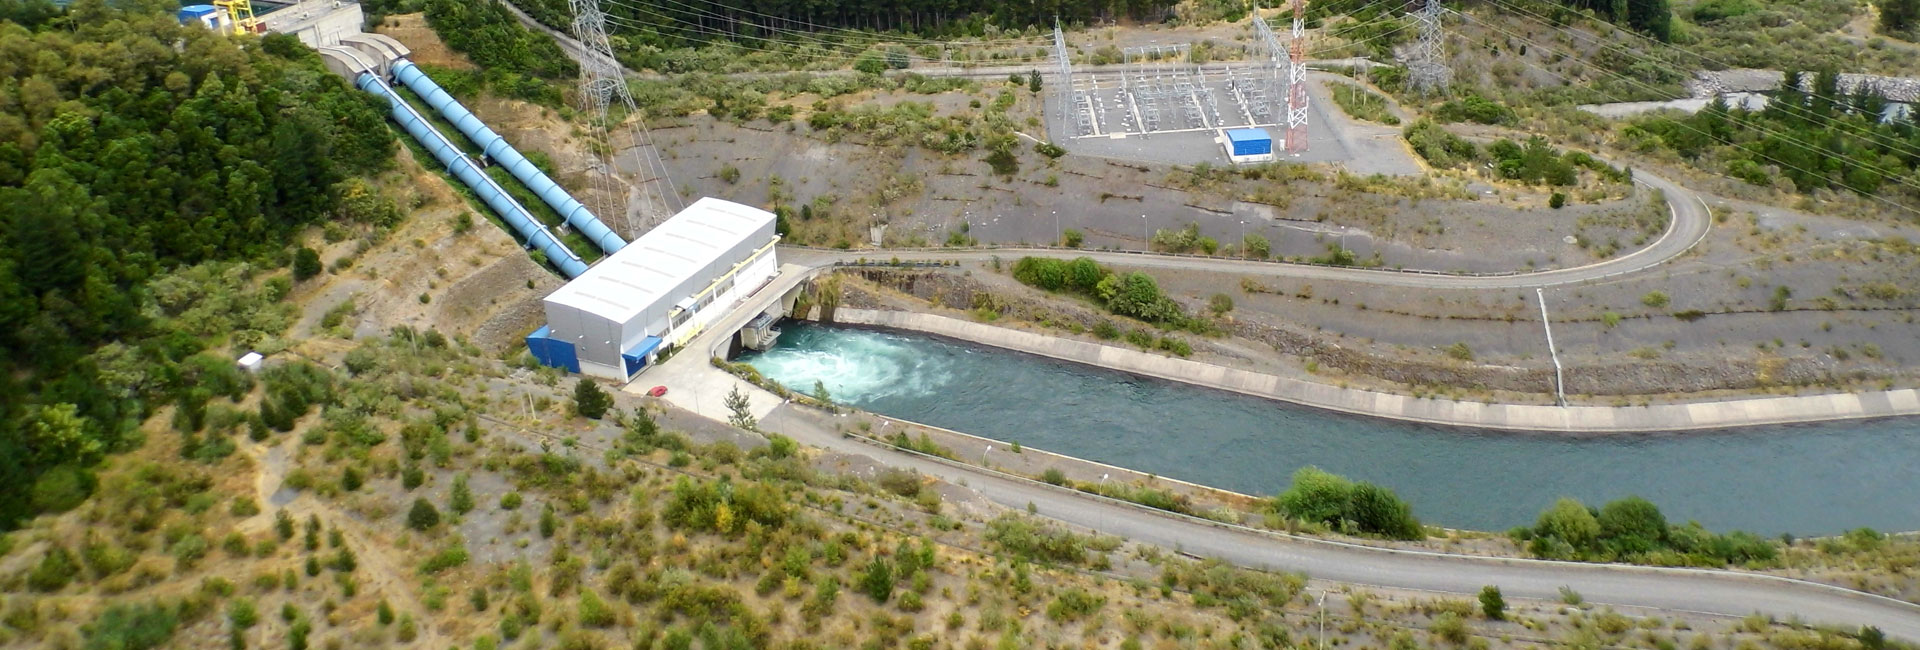 Central Hidroeléctrica Quilleco